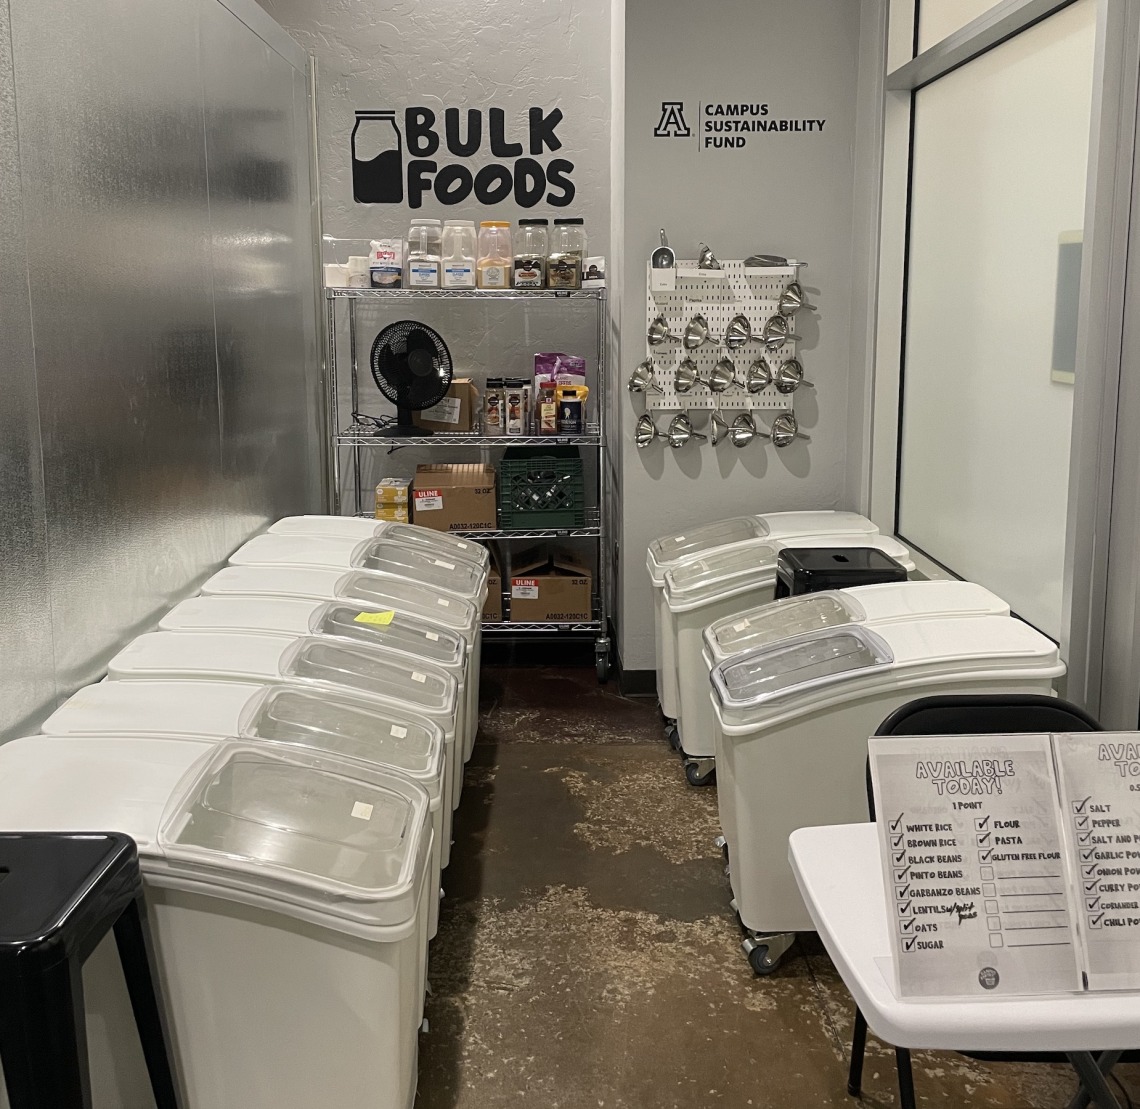 Image of Bulk Foods station